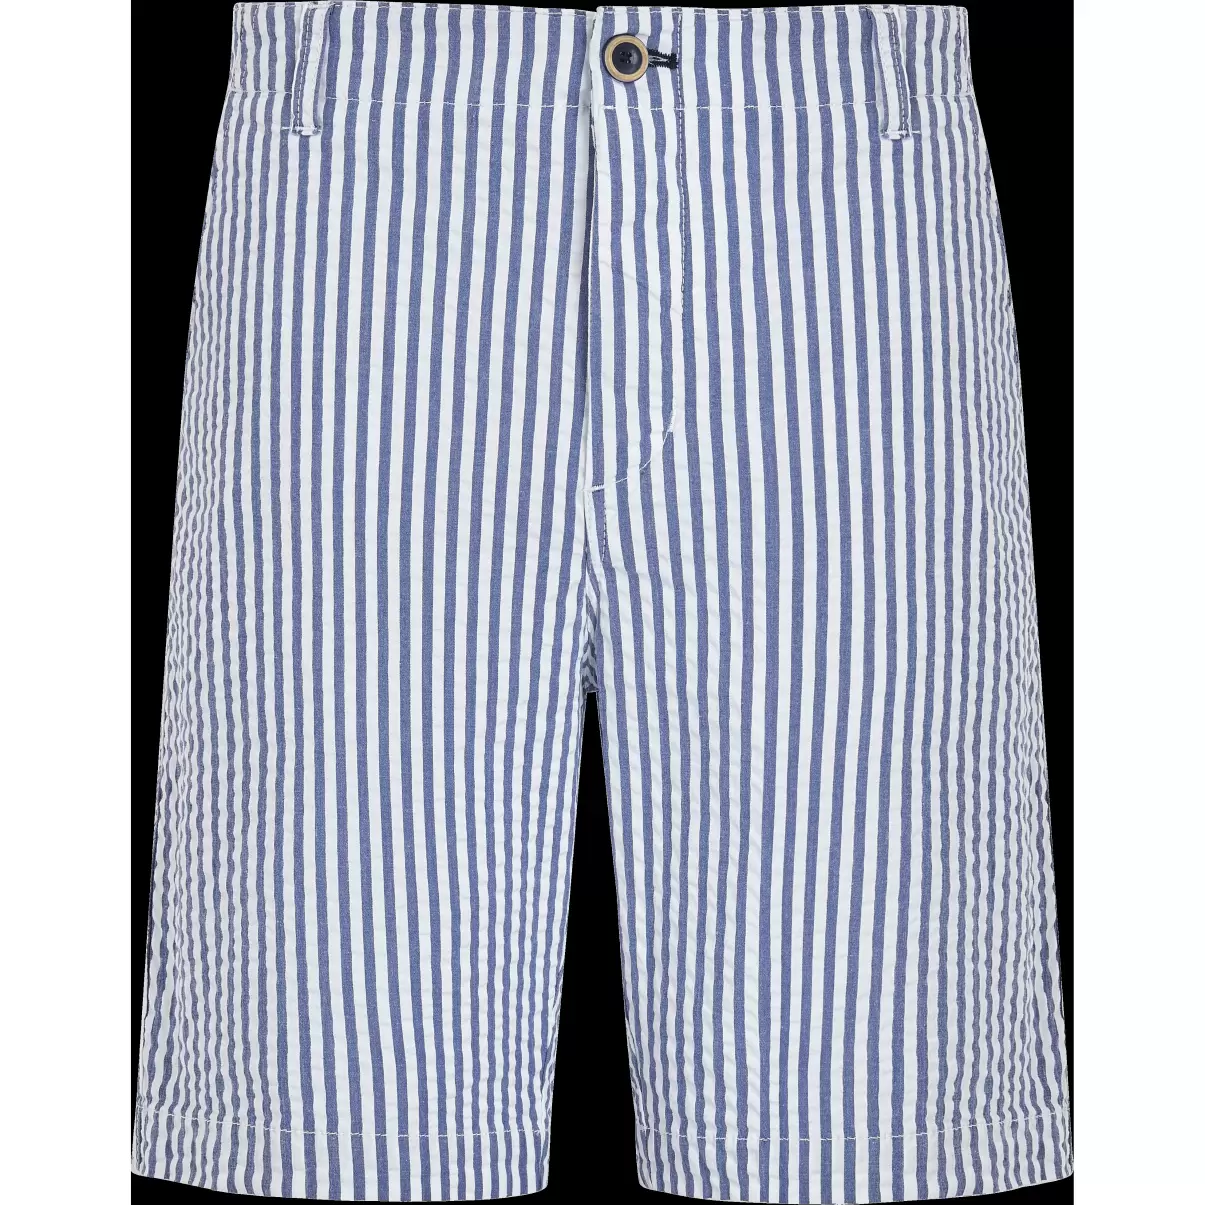 Jeans Blue / Blau Shorts Ultraleichte Seersucker Chino-Bermudashorts Für Herren Vilebrequin Rabattberechtigung Herren - 3